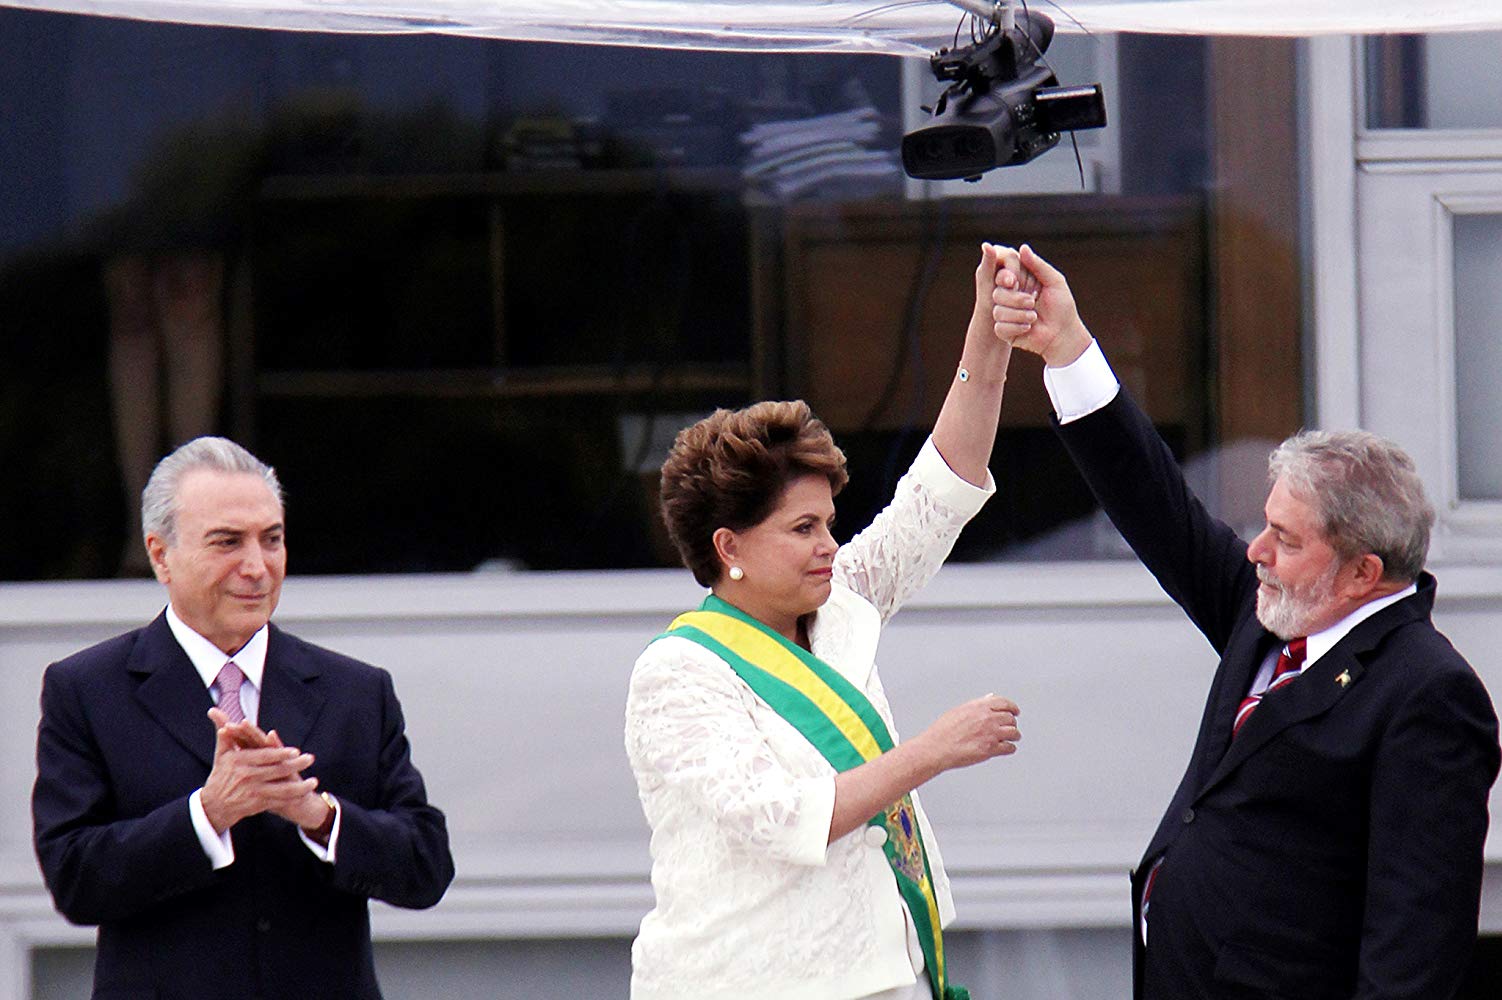 Democracia em Vertigem leva o Brasil ao Oscar pela oitava vez